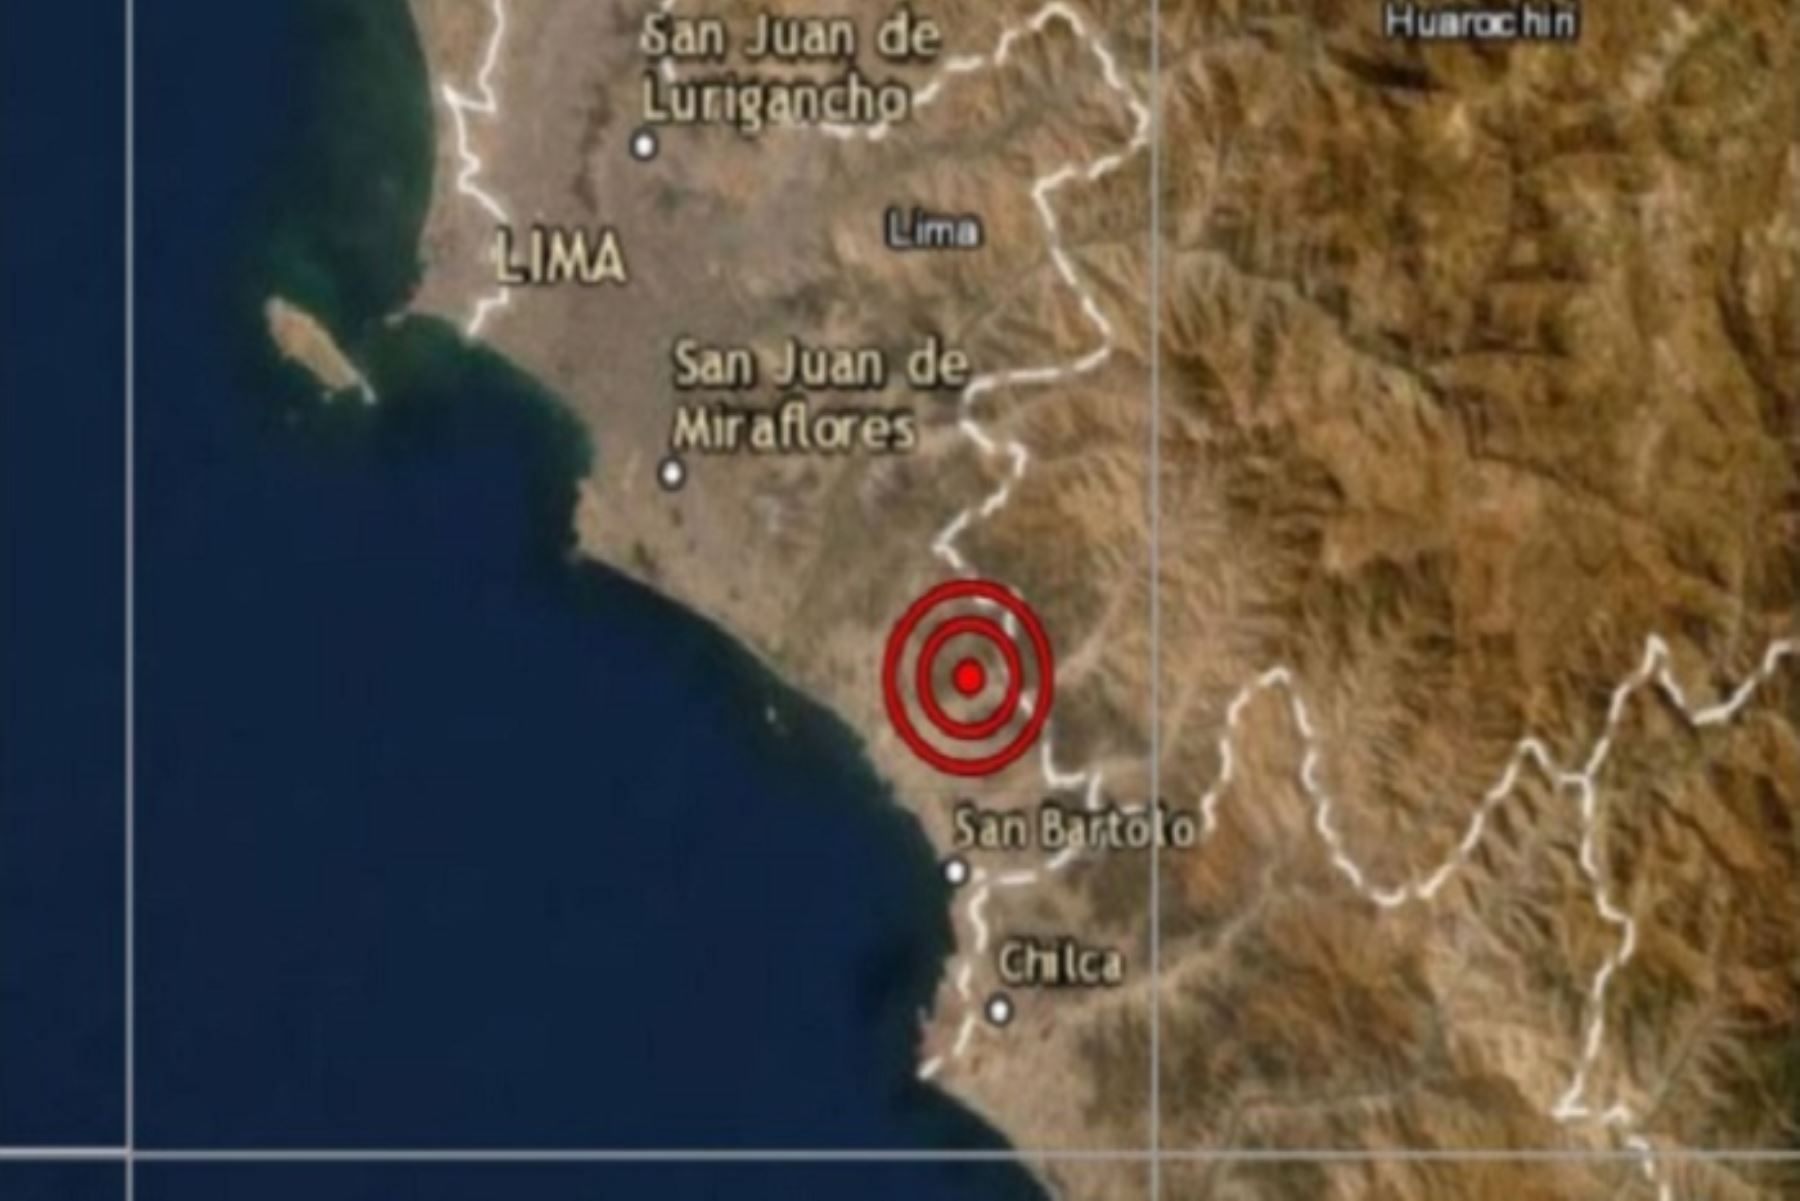 IGP reporta sismo de magnitud 3.7 en el distrito de Huacho esta mañana